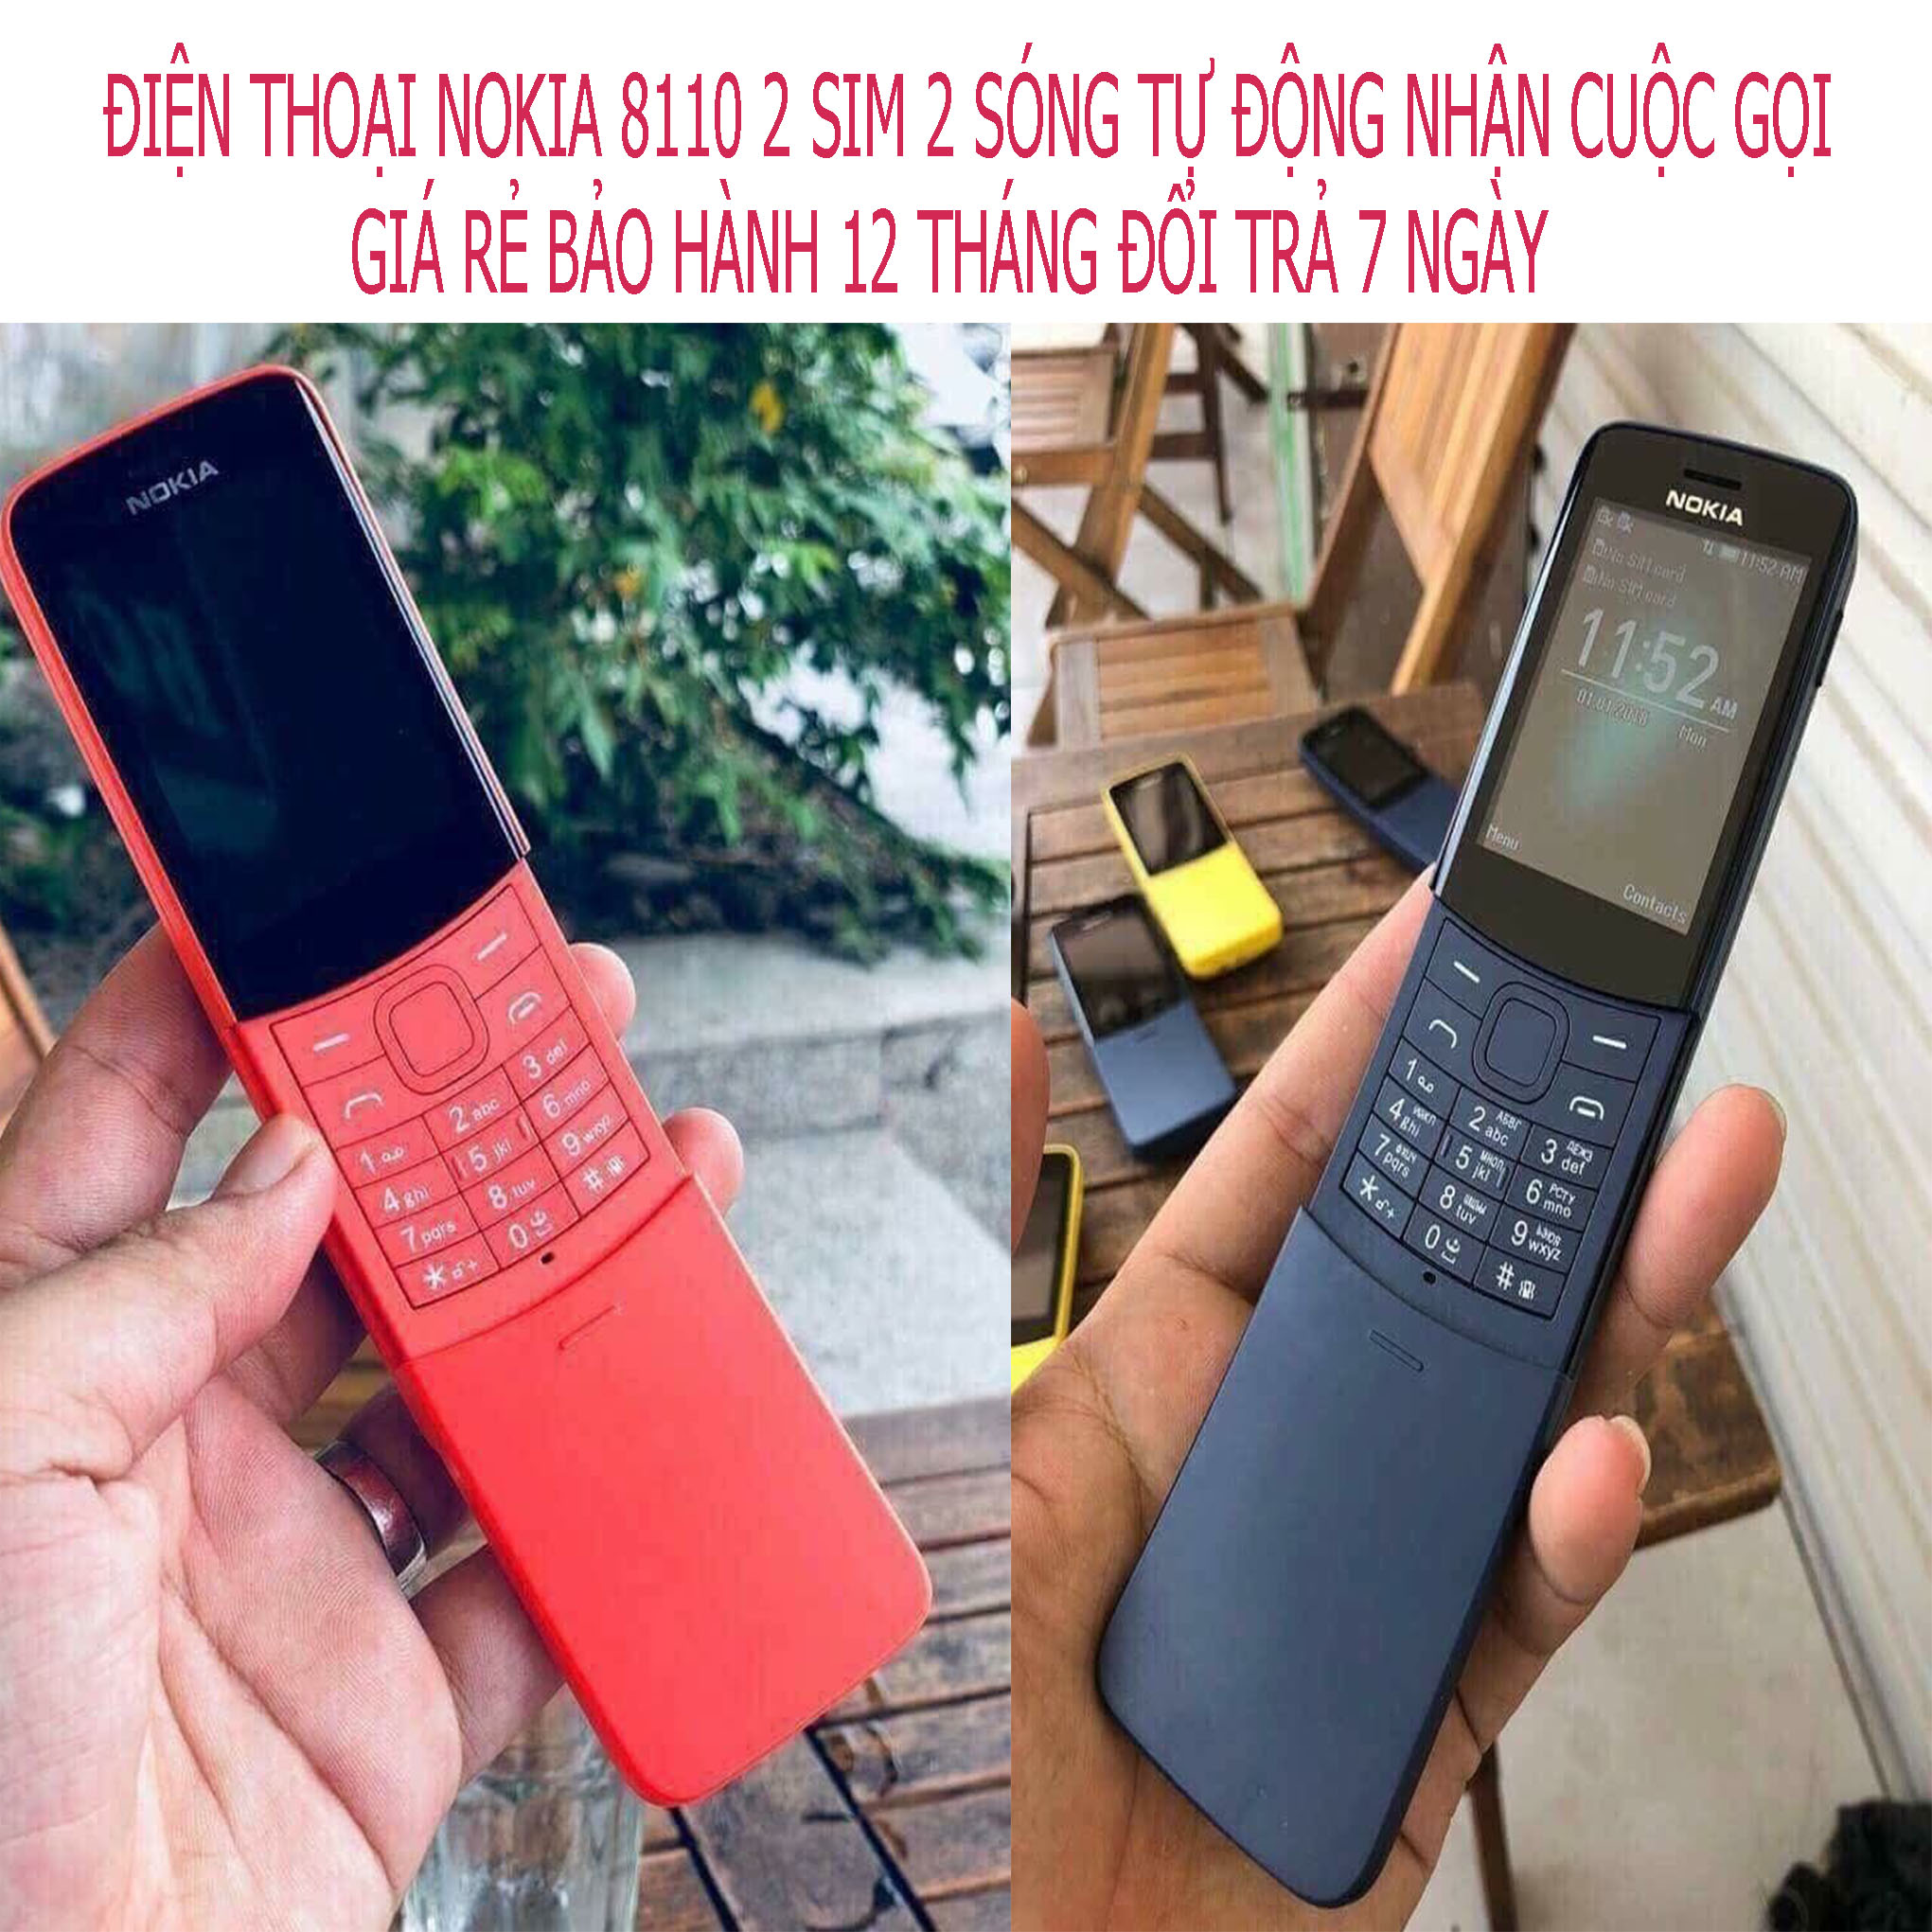 Điện thoại 8110 4G: Khám phá điện thoại Nokia 8110 4G phiên bản cập nhật hiện đại của chiếc điện thoại quay số huyền thoại, mang lại trải nghiệm lạ và độc đáo cho người dùng. Hãy đến với hình ảnh để khám phá những tính năng tuyệt vời của sản phẩm này.